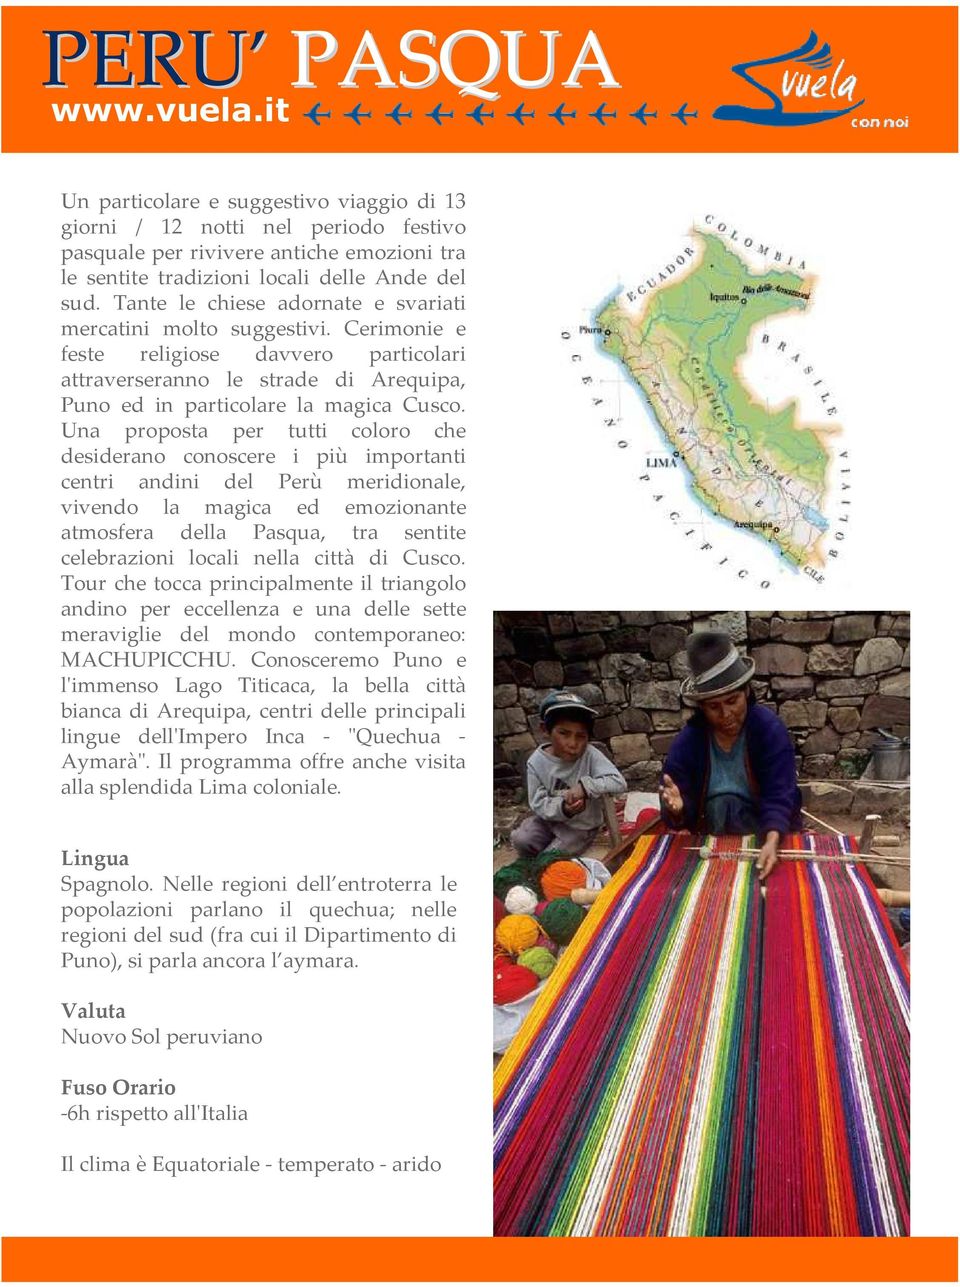 Una proposta per tutti coloro che desiderano conoscere i più importanti centri andini del Perù meridionale, vivendo la magica ed emozionante atmosfera della Pasqua, tra sentite celebrazioni locali